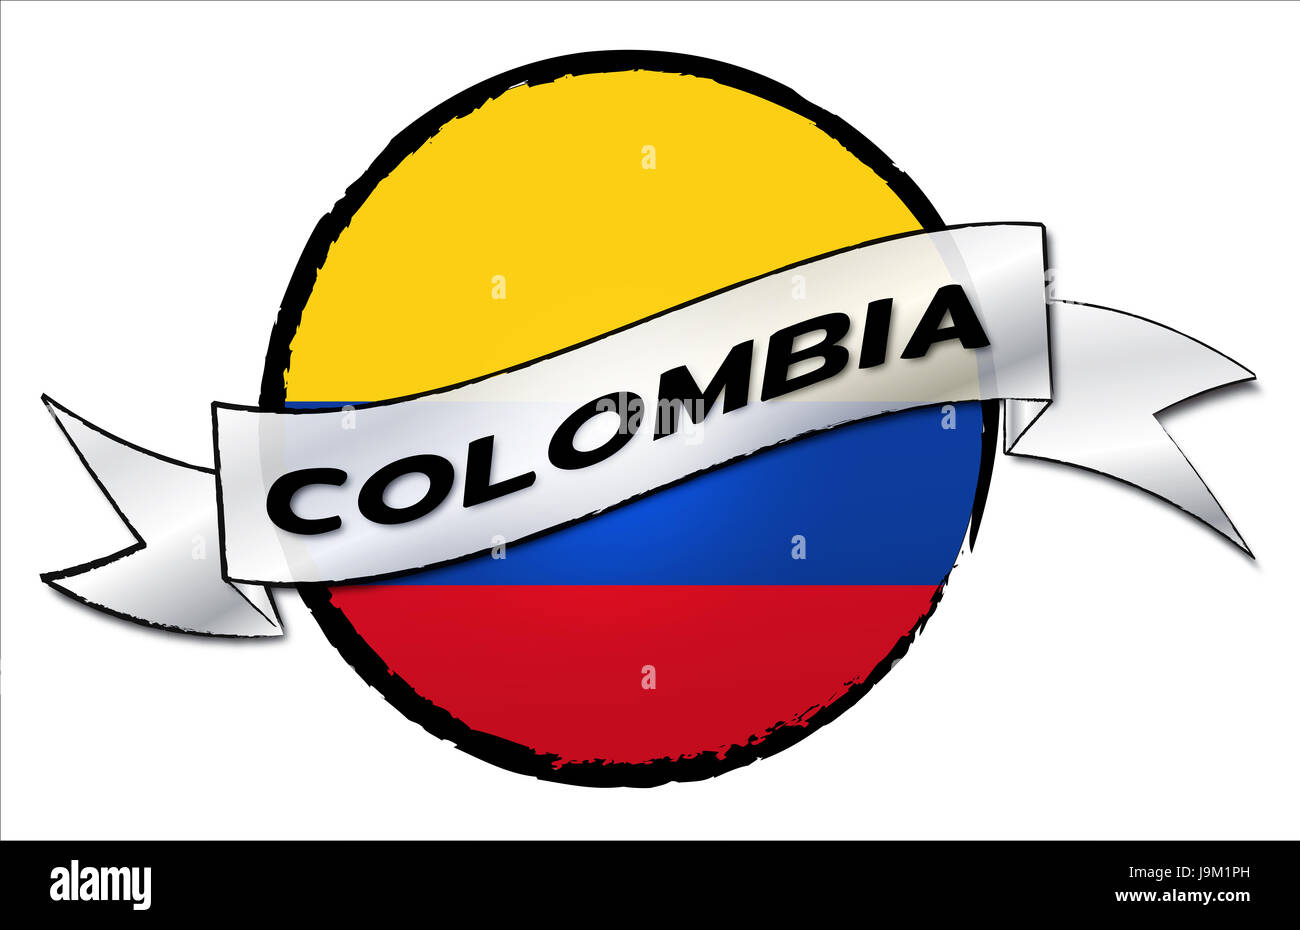 America latina, colombia, america, bandiera, farmaci, viaggio, pulsante, latino, banner, Foto Stock